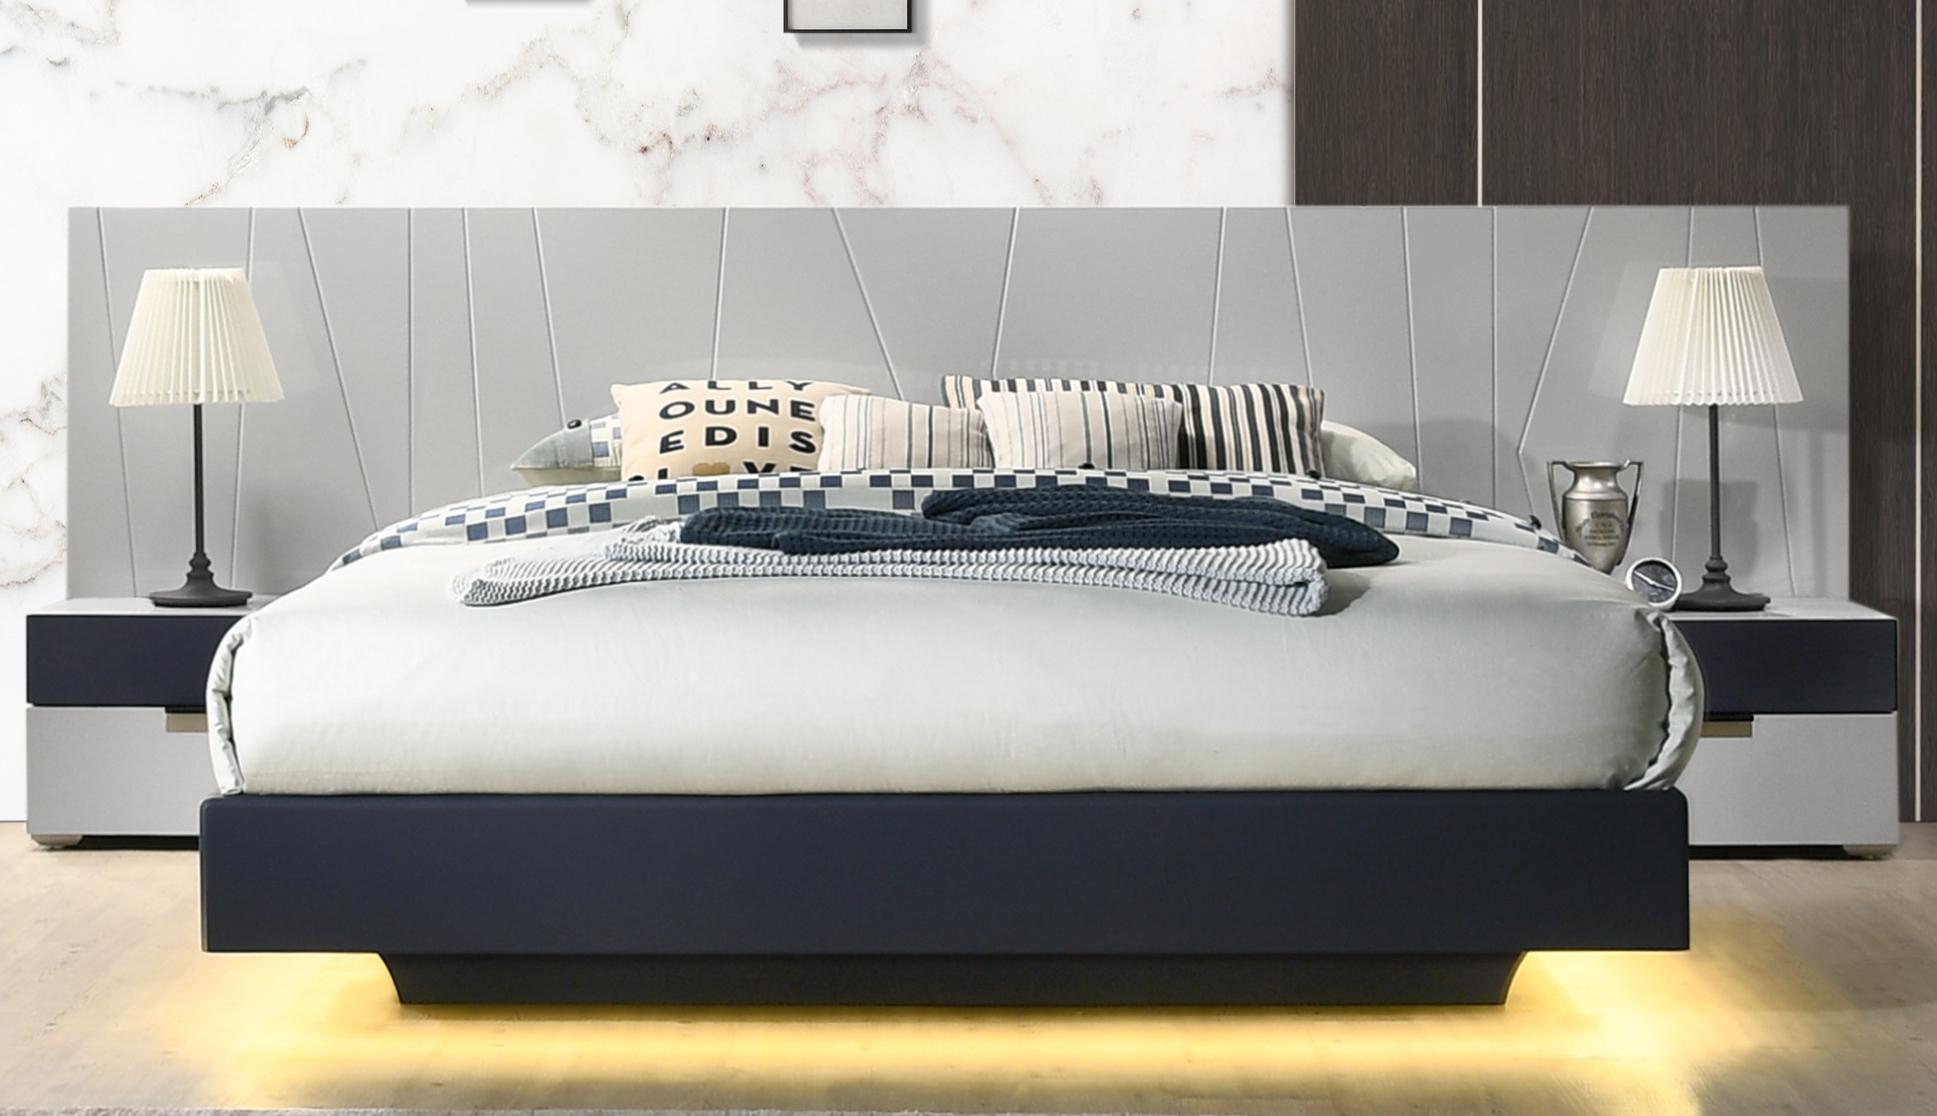 

    
Navy & Light Gray Finish Lighted Platform Queen Bedroom Set 3Pcs Modern J&M Marsala
